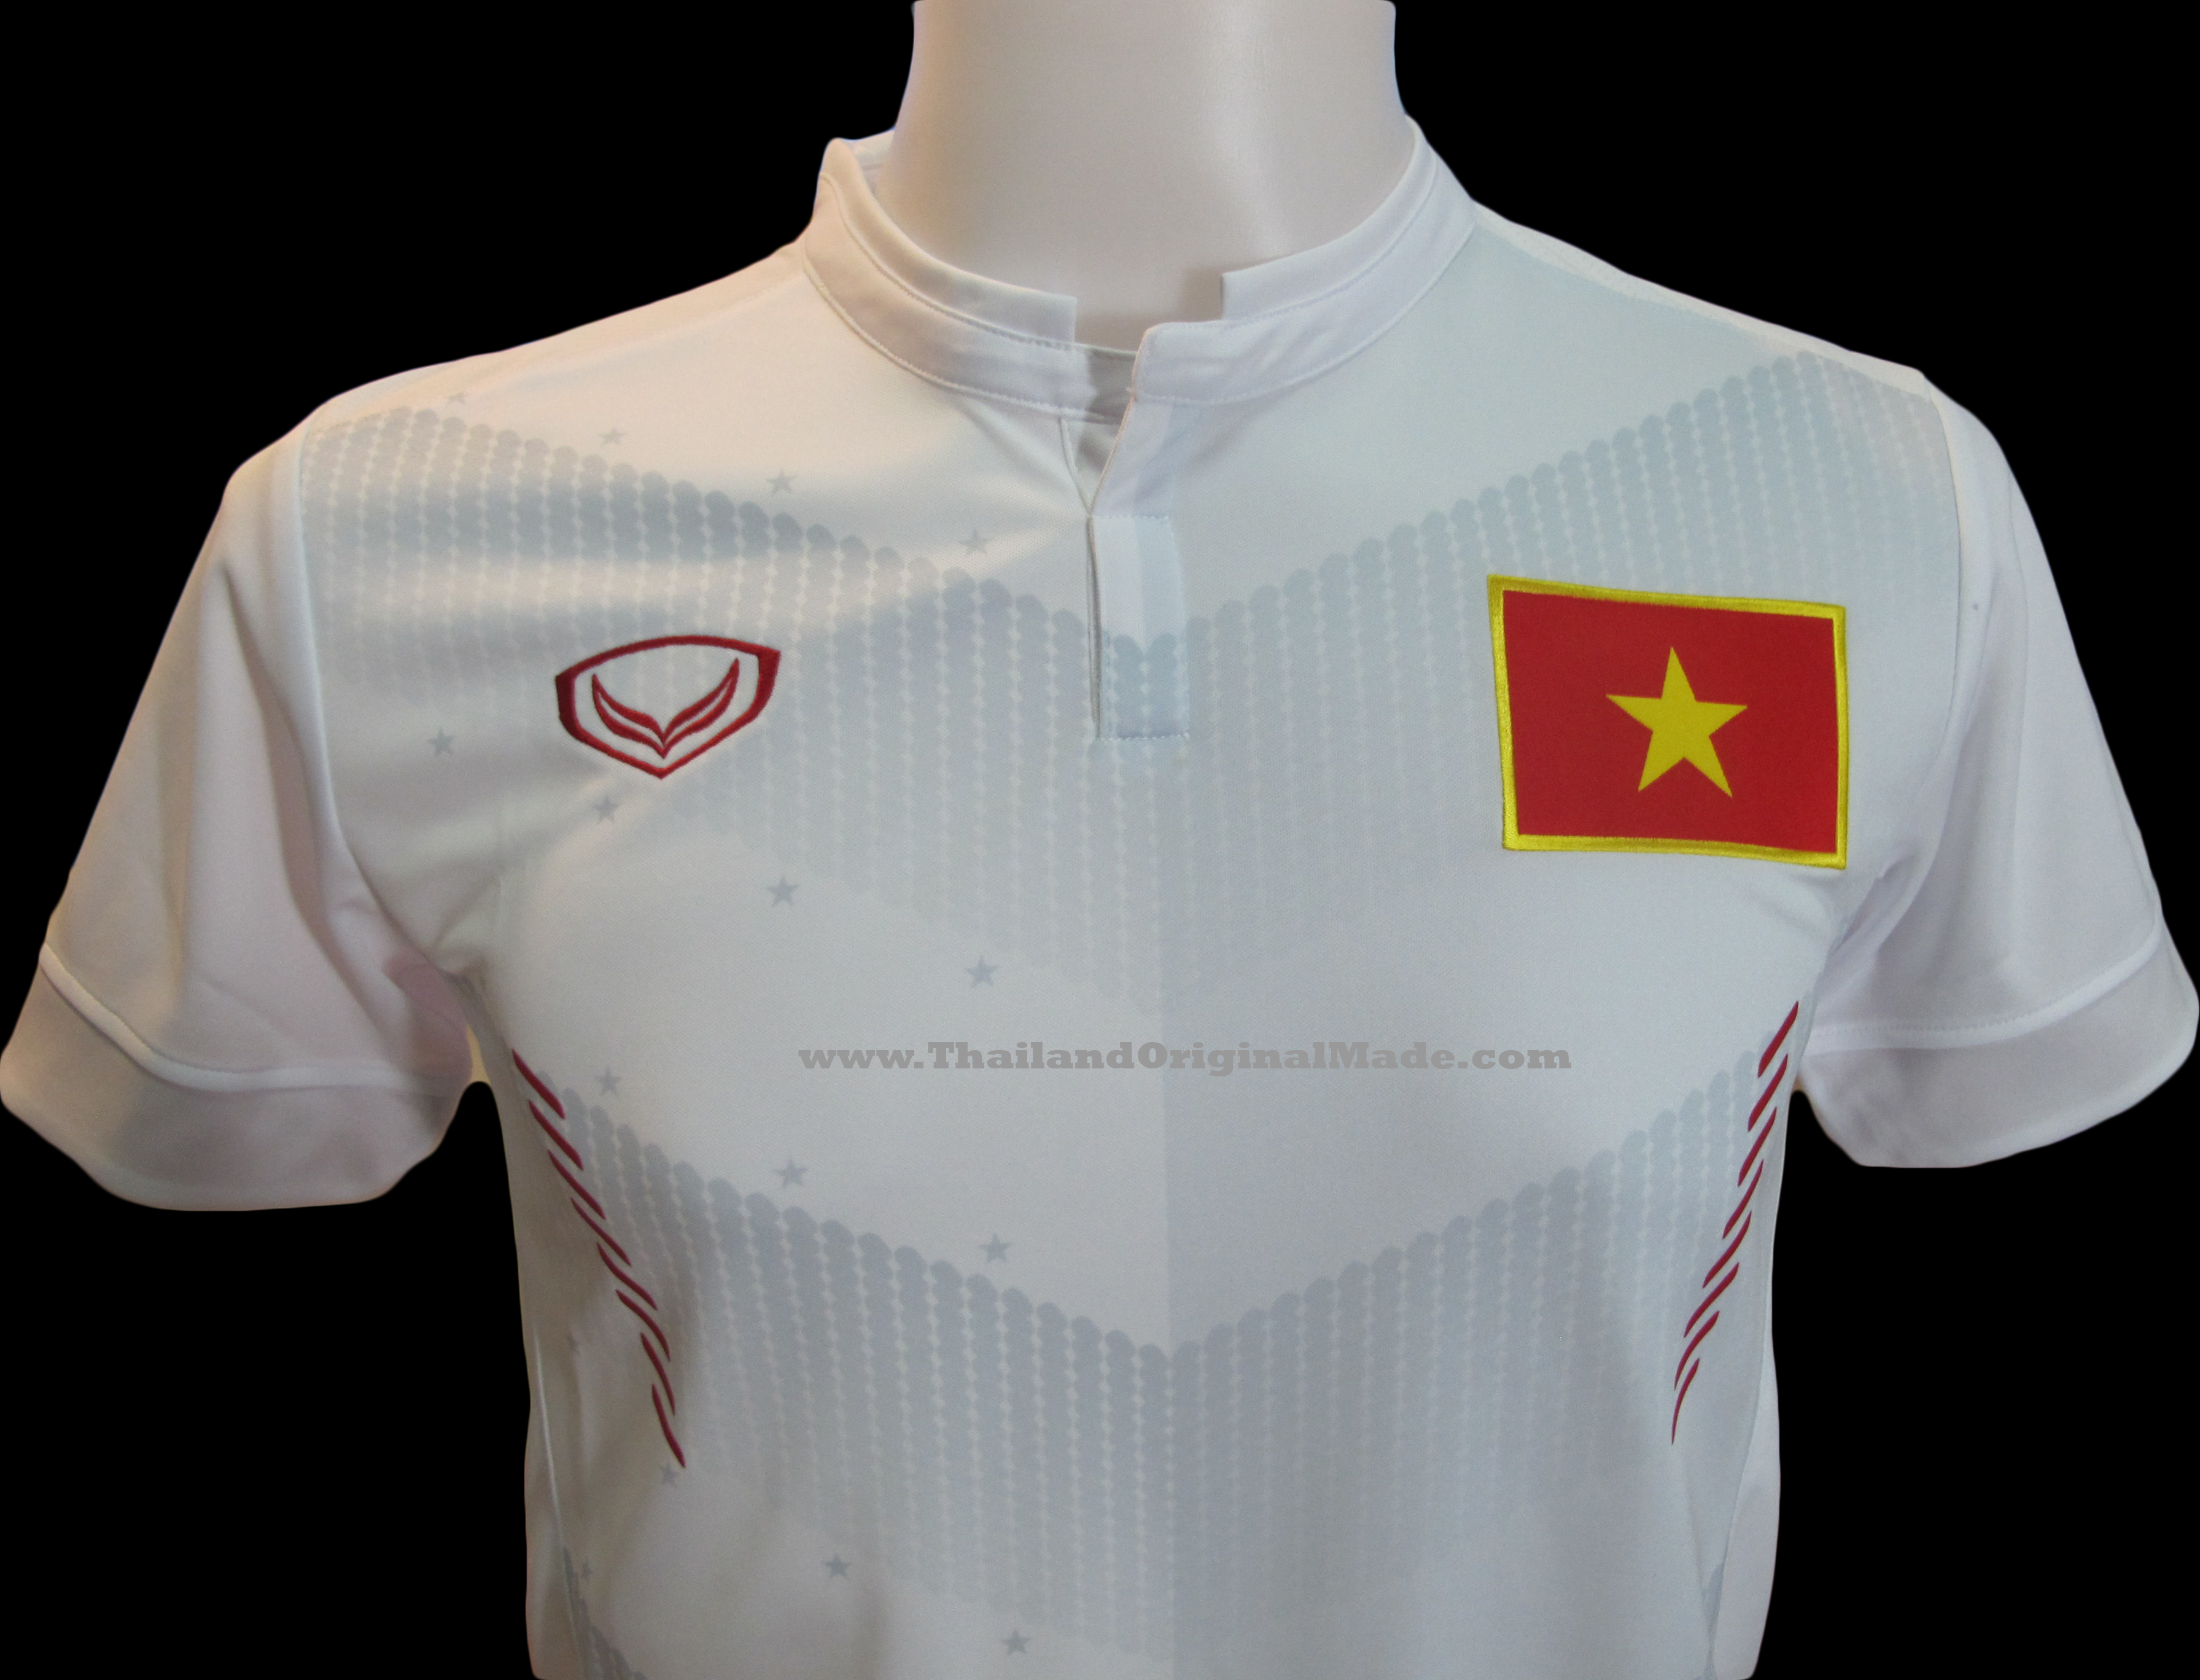 2016/17 Vietnam National Team Genuine Official Football ...